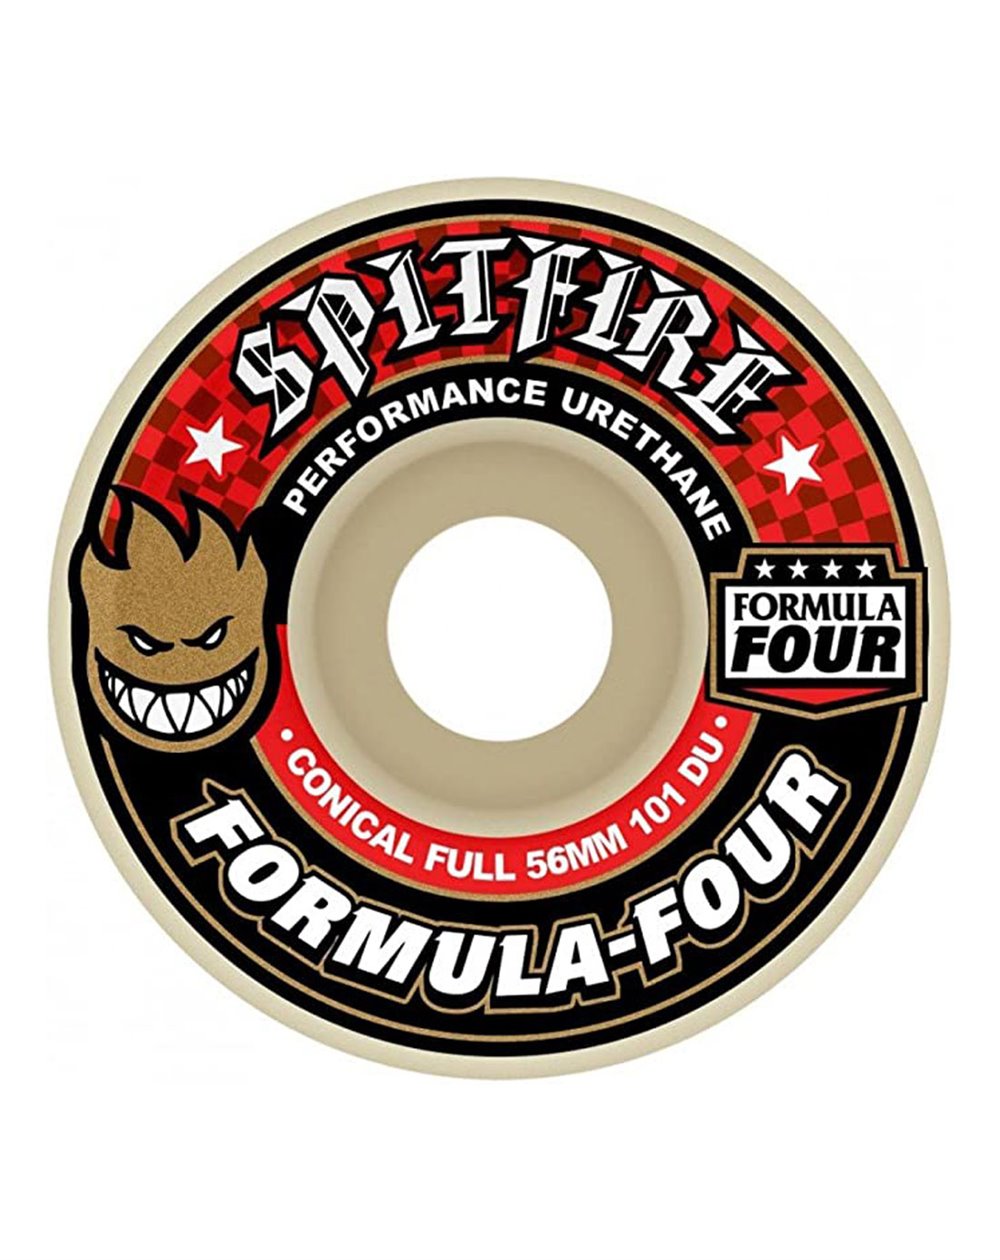 Spitfire Rodas Skate Formula Four Conical Full 56mm 101A 4 peças